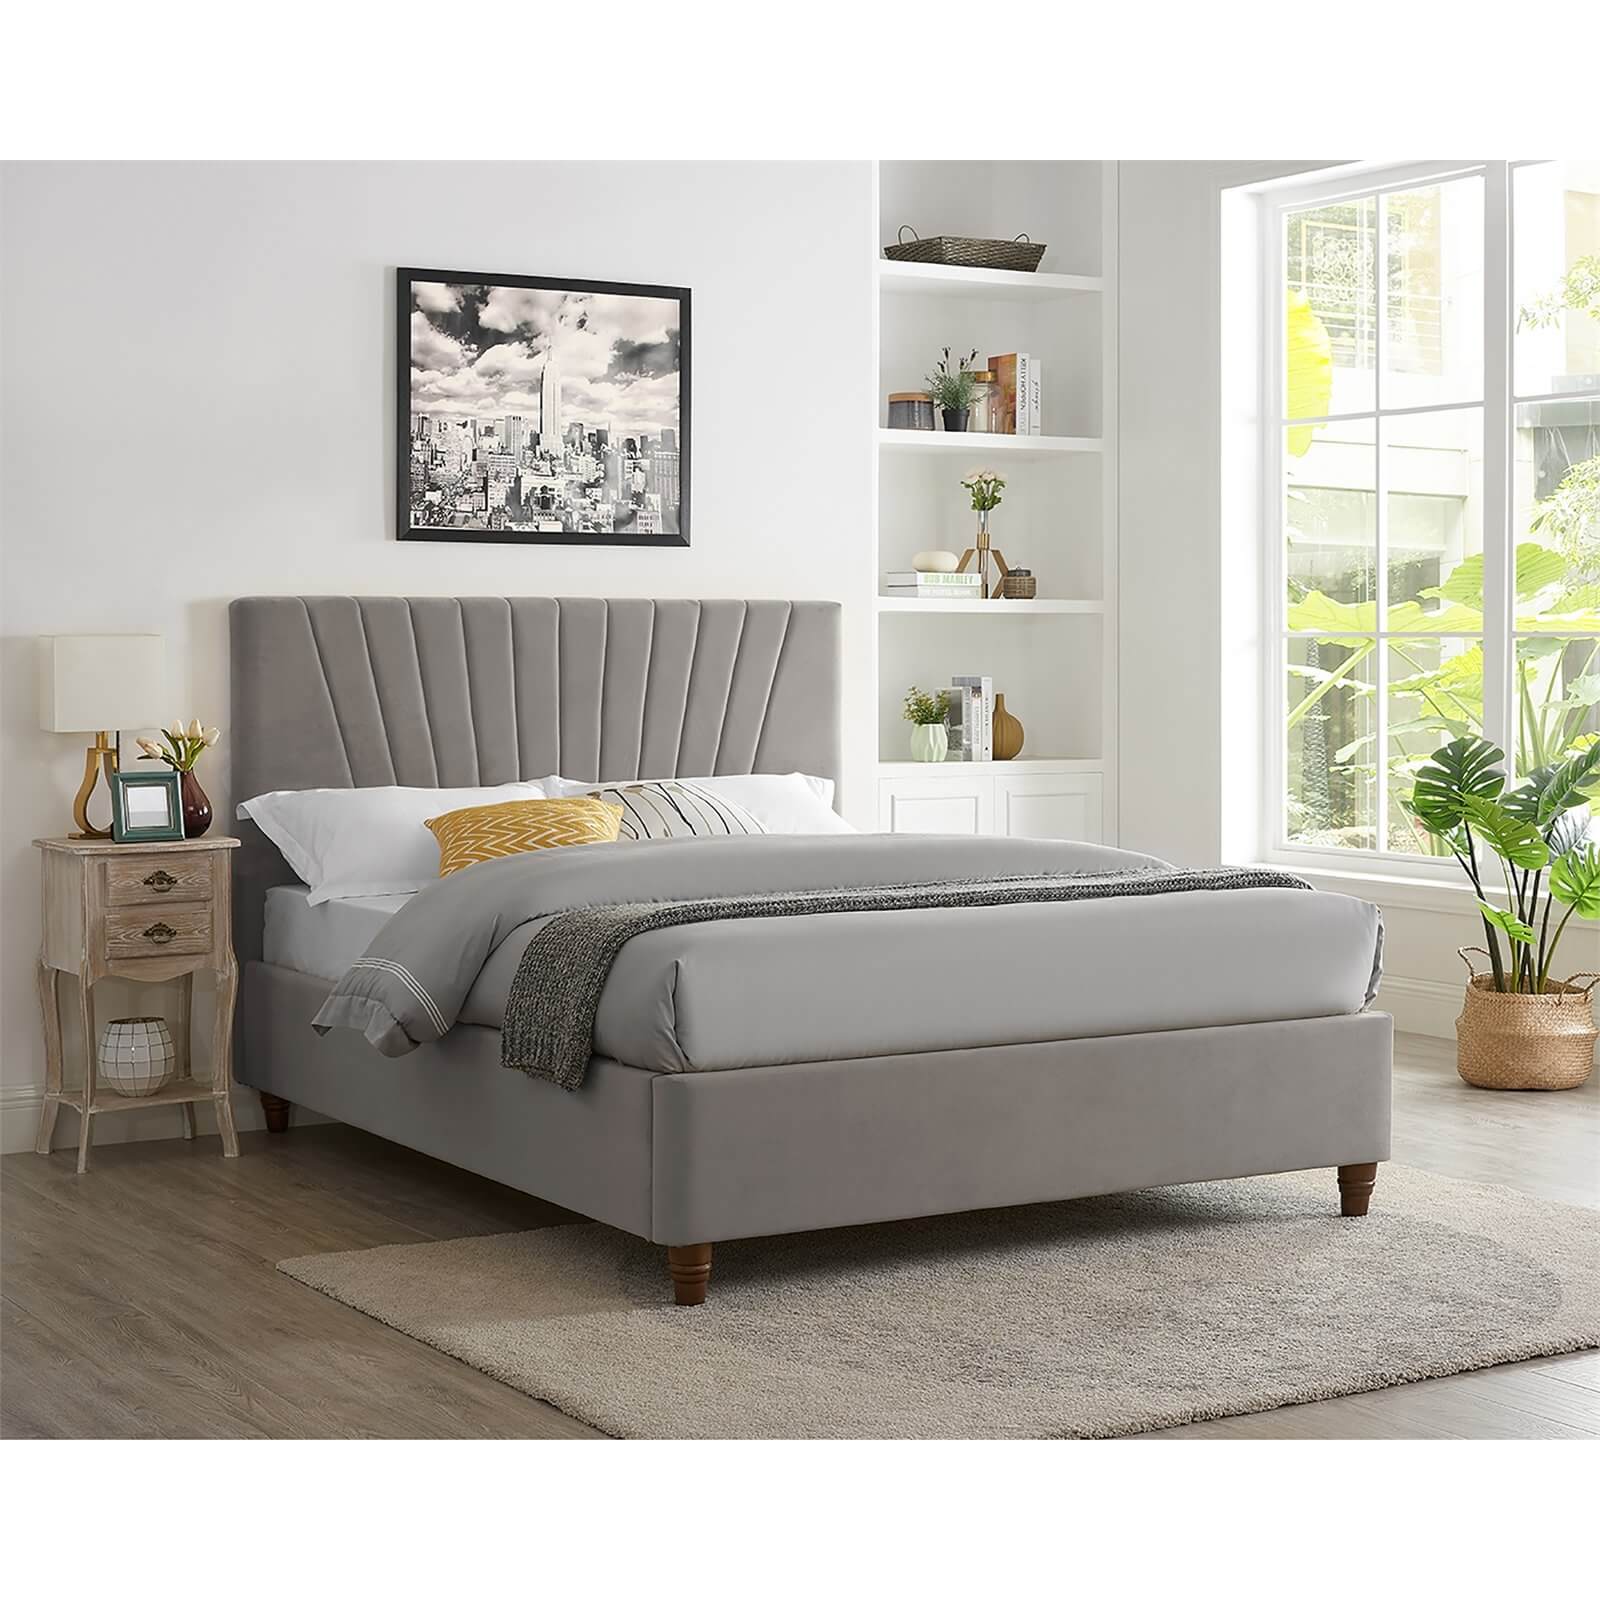 Lexie Velvet Upholstered Double Bed - Silver